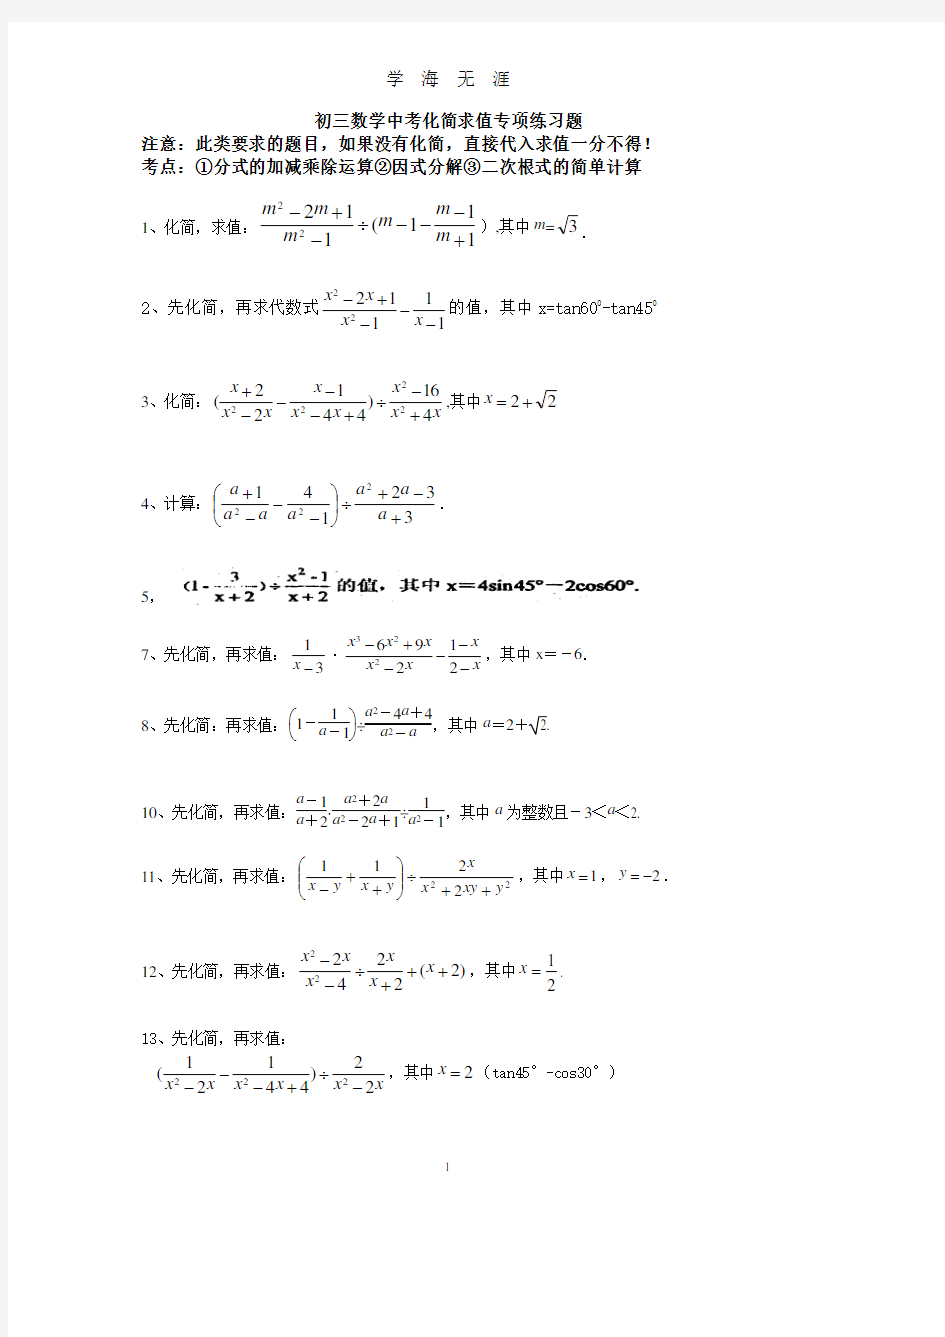 初三数学中考专项化简求值练习题(2020年8月整理).pdf